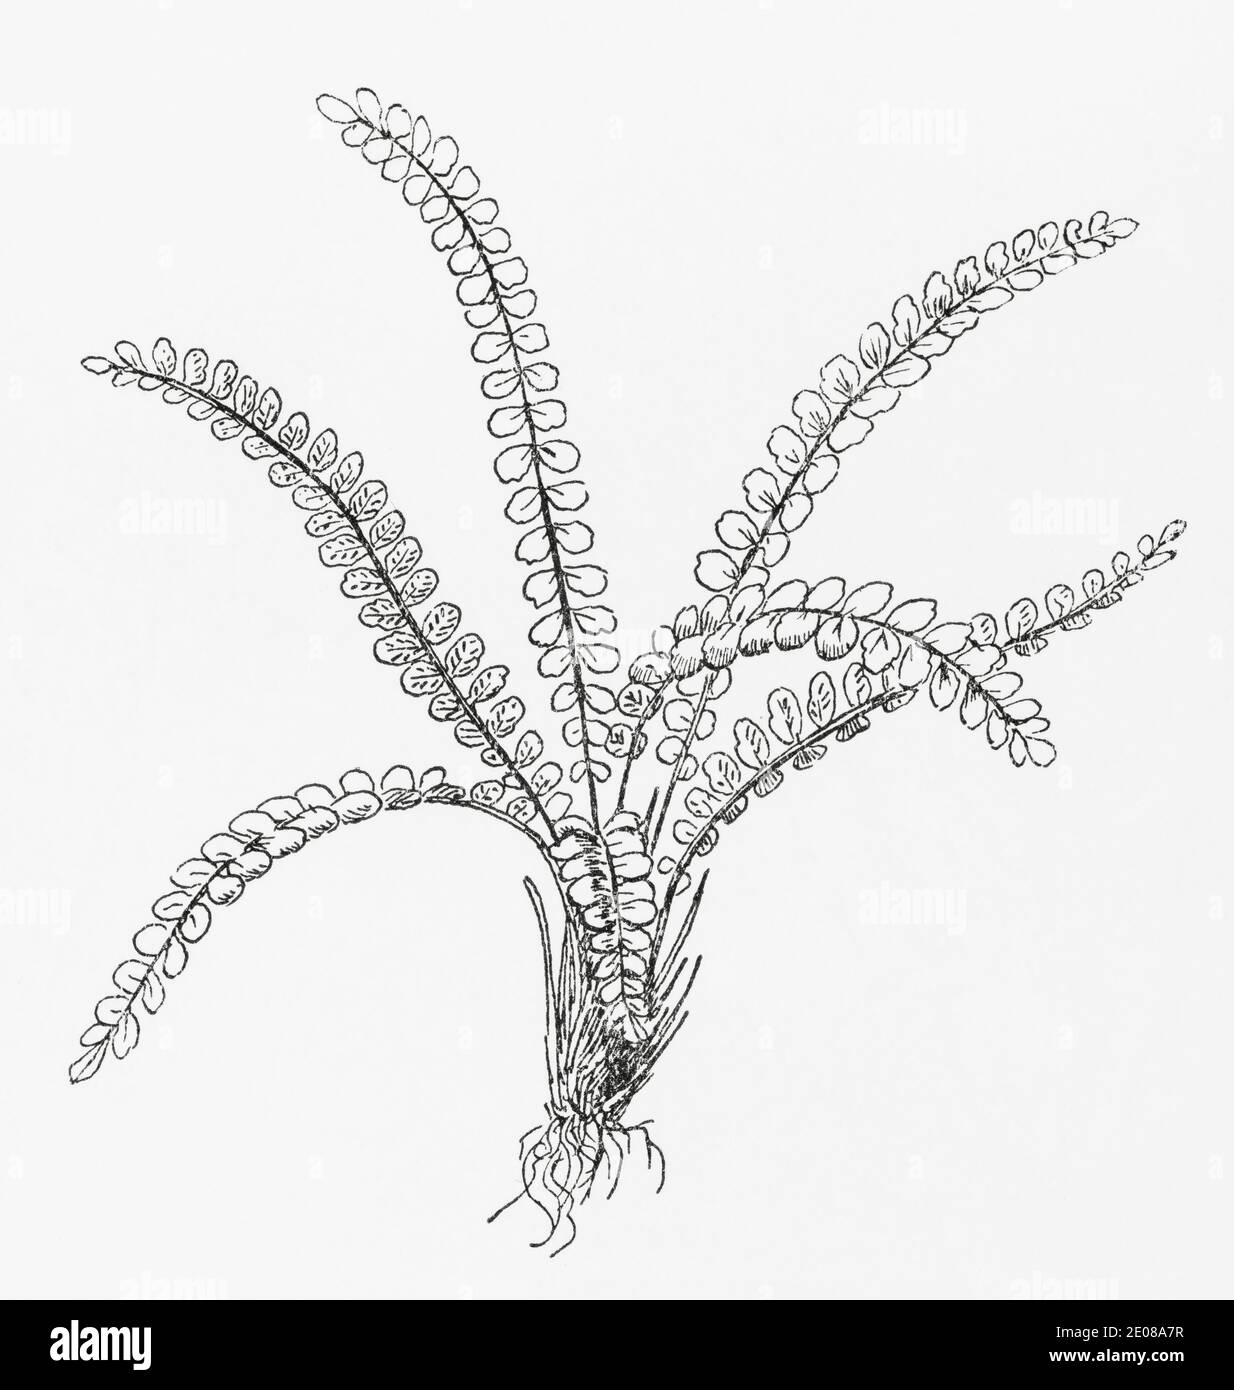 Ancienne gravure d'illustration botanique de Maidenhair Spleenwort / Asplenium trichomanes. Plante médicinale traditionnelle. Voir Remarques Banque D'Images